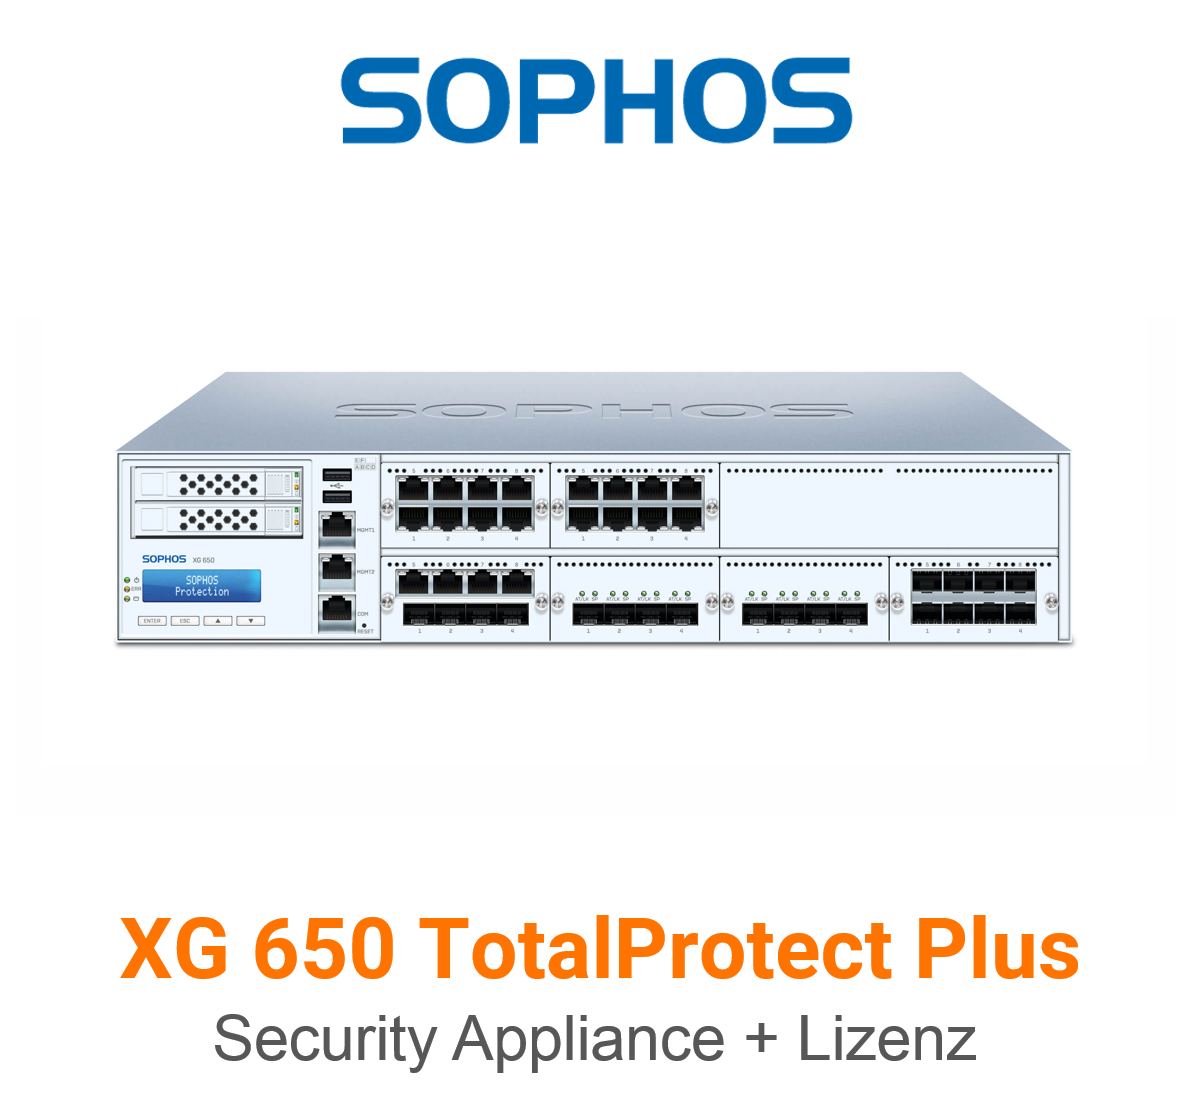 Sophos XG 650 TotalProtect Plus Bundle (Hardware + Lizenz)